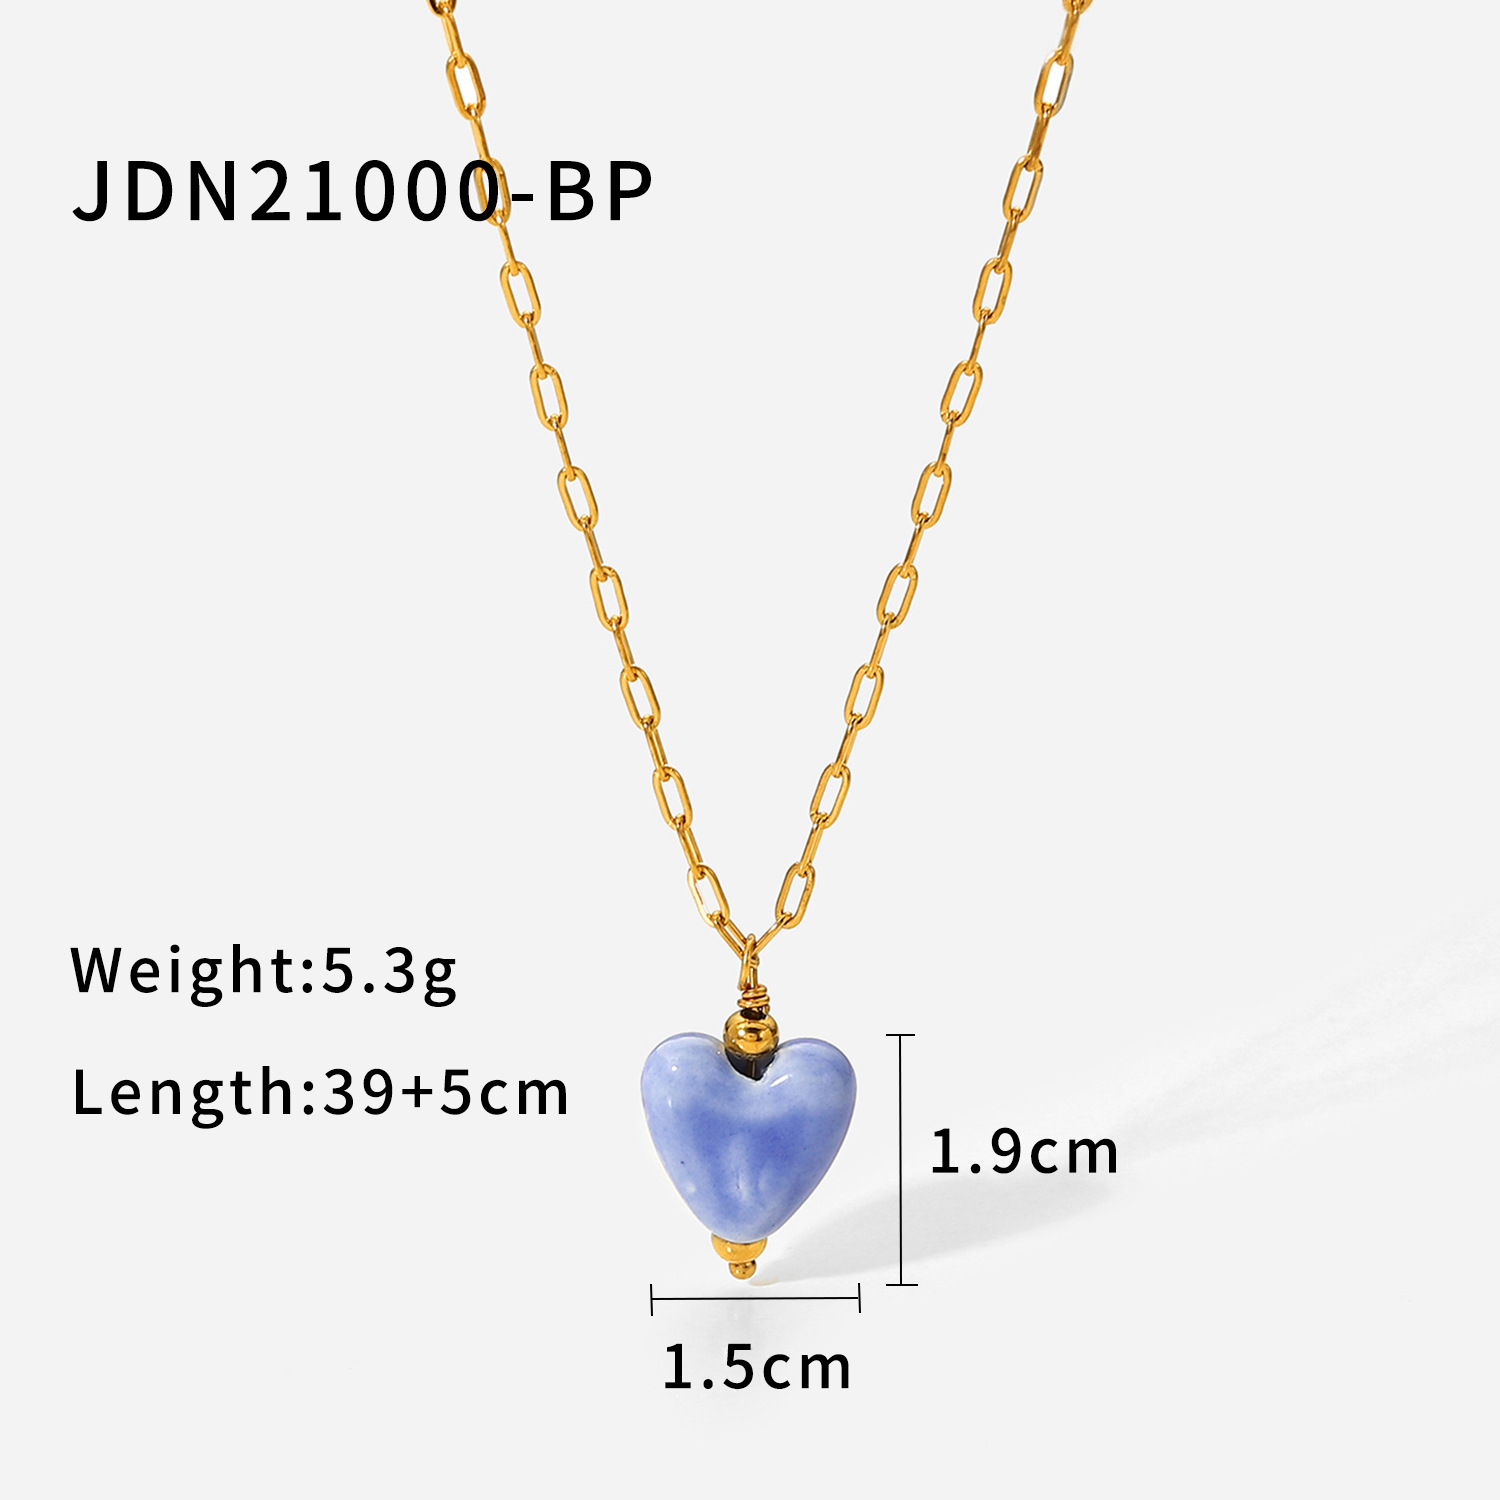 JDN21000-BP